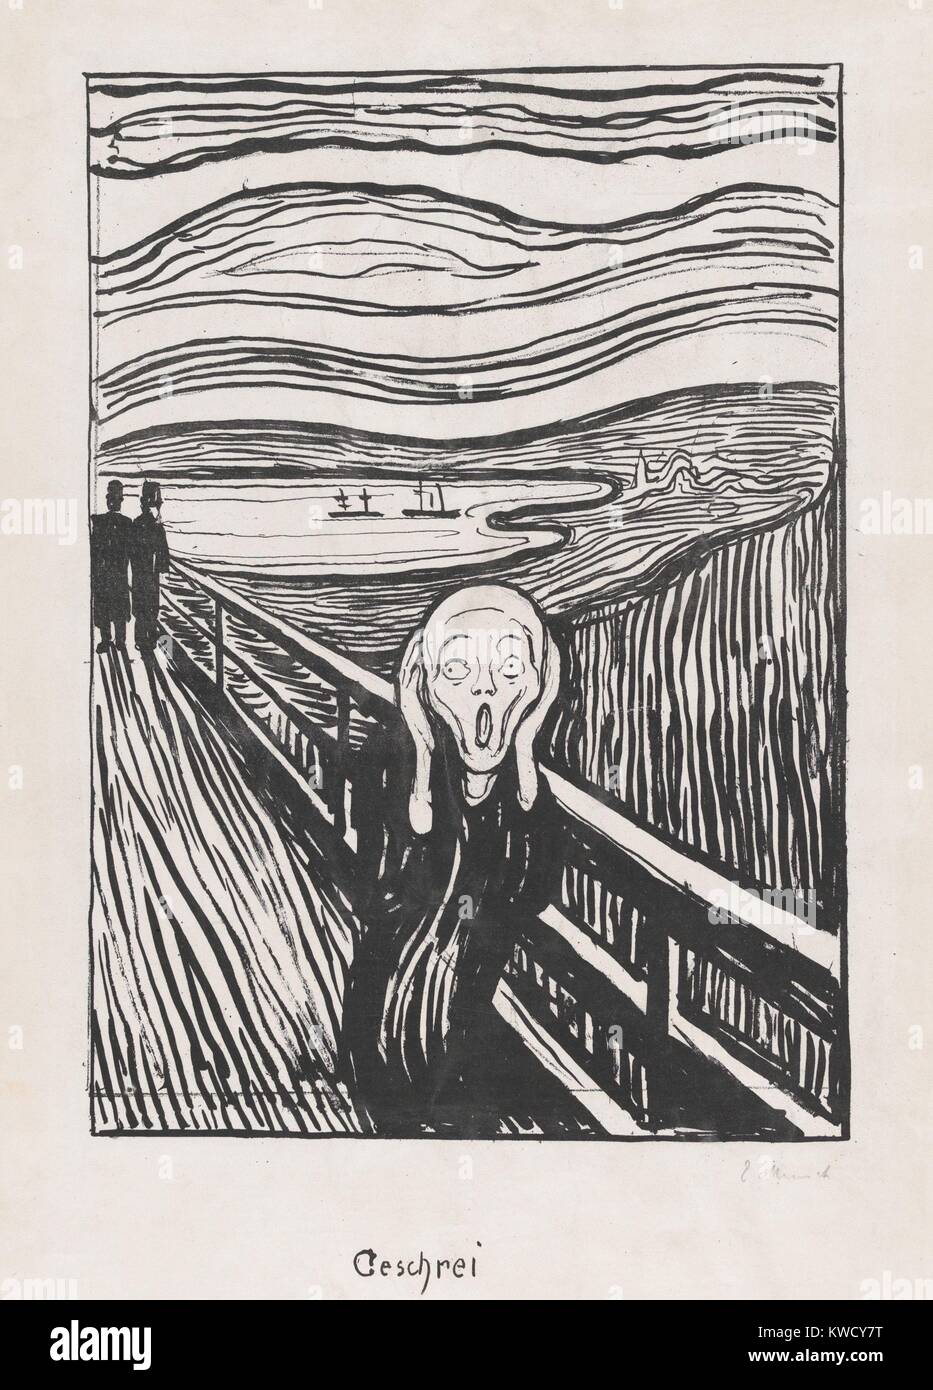 Le cri, d'Edvard Munch, 1895, symboliste norvégien/impression lithographie, expressionniste. Le crâne comme tête humaine a une seule dimension psychologique. Le précurseur de cette image est un dessin d'un homme, Munch lui-même, sur un pont semblable, dans lequel il BSLOC fe (2017 5 141) Banque D'Images